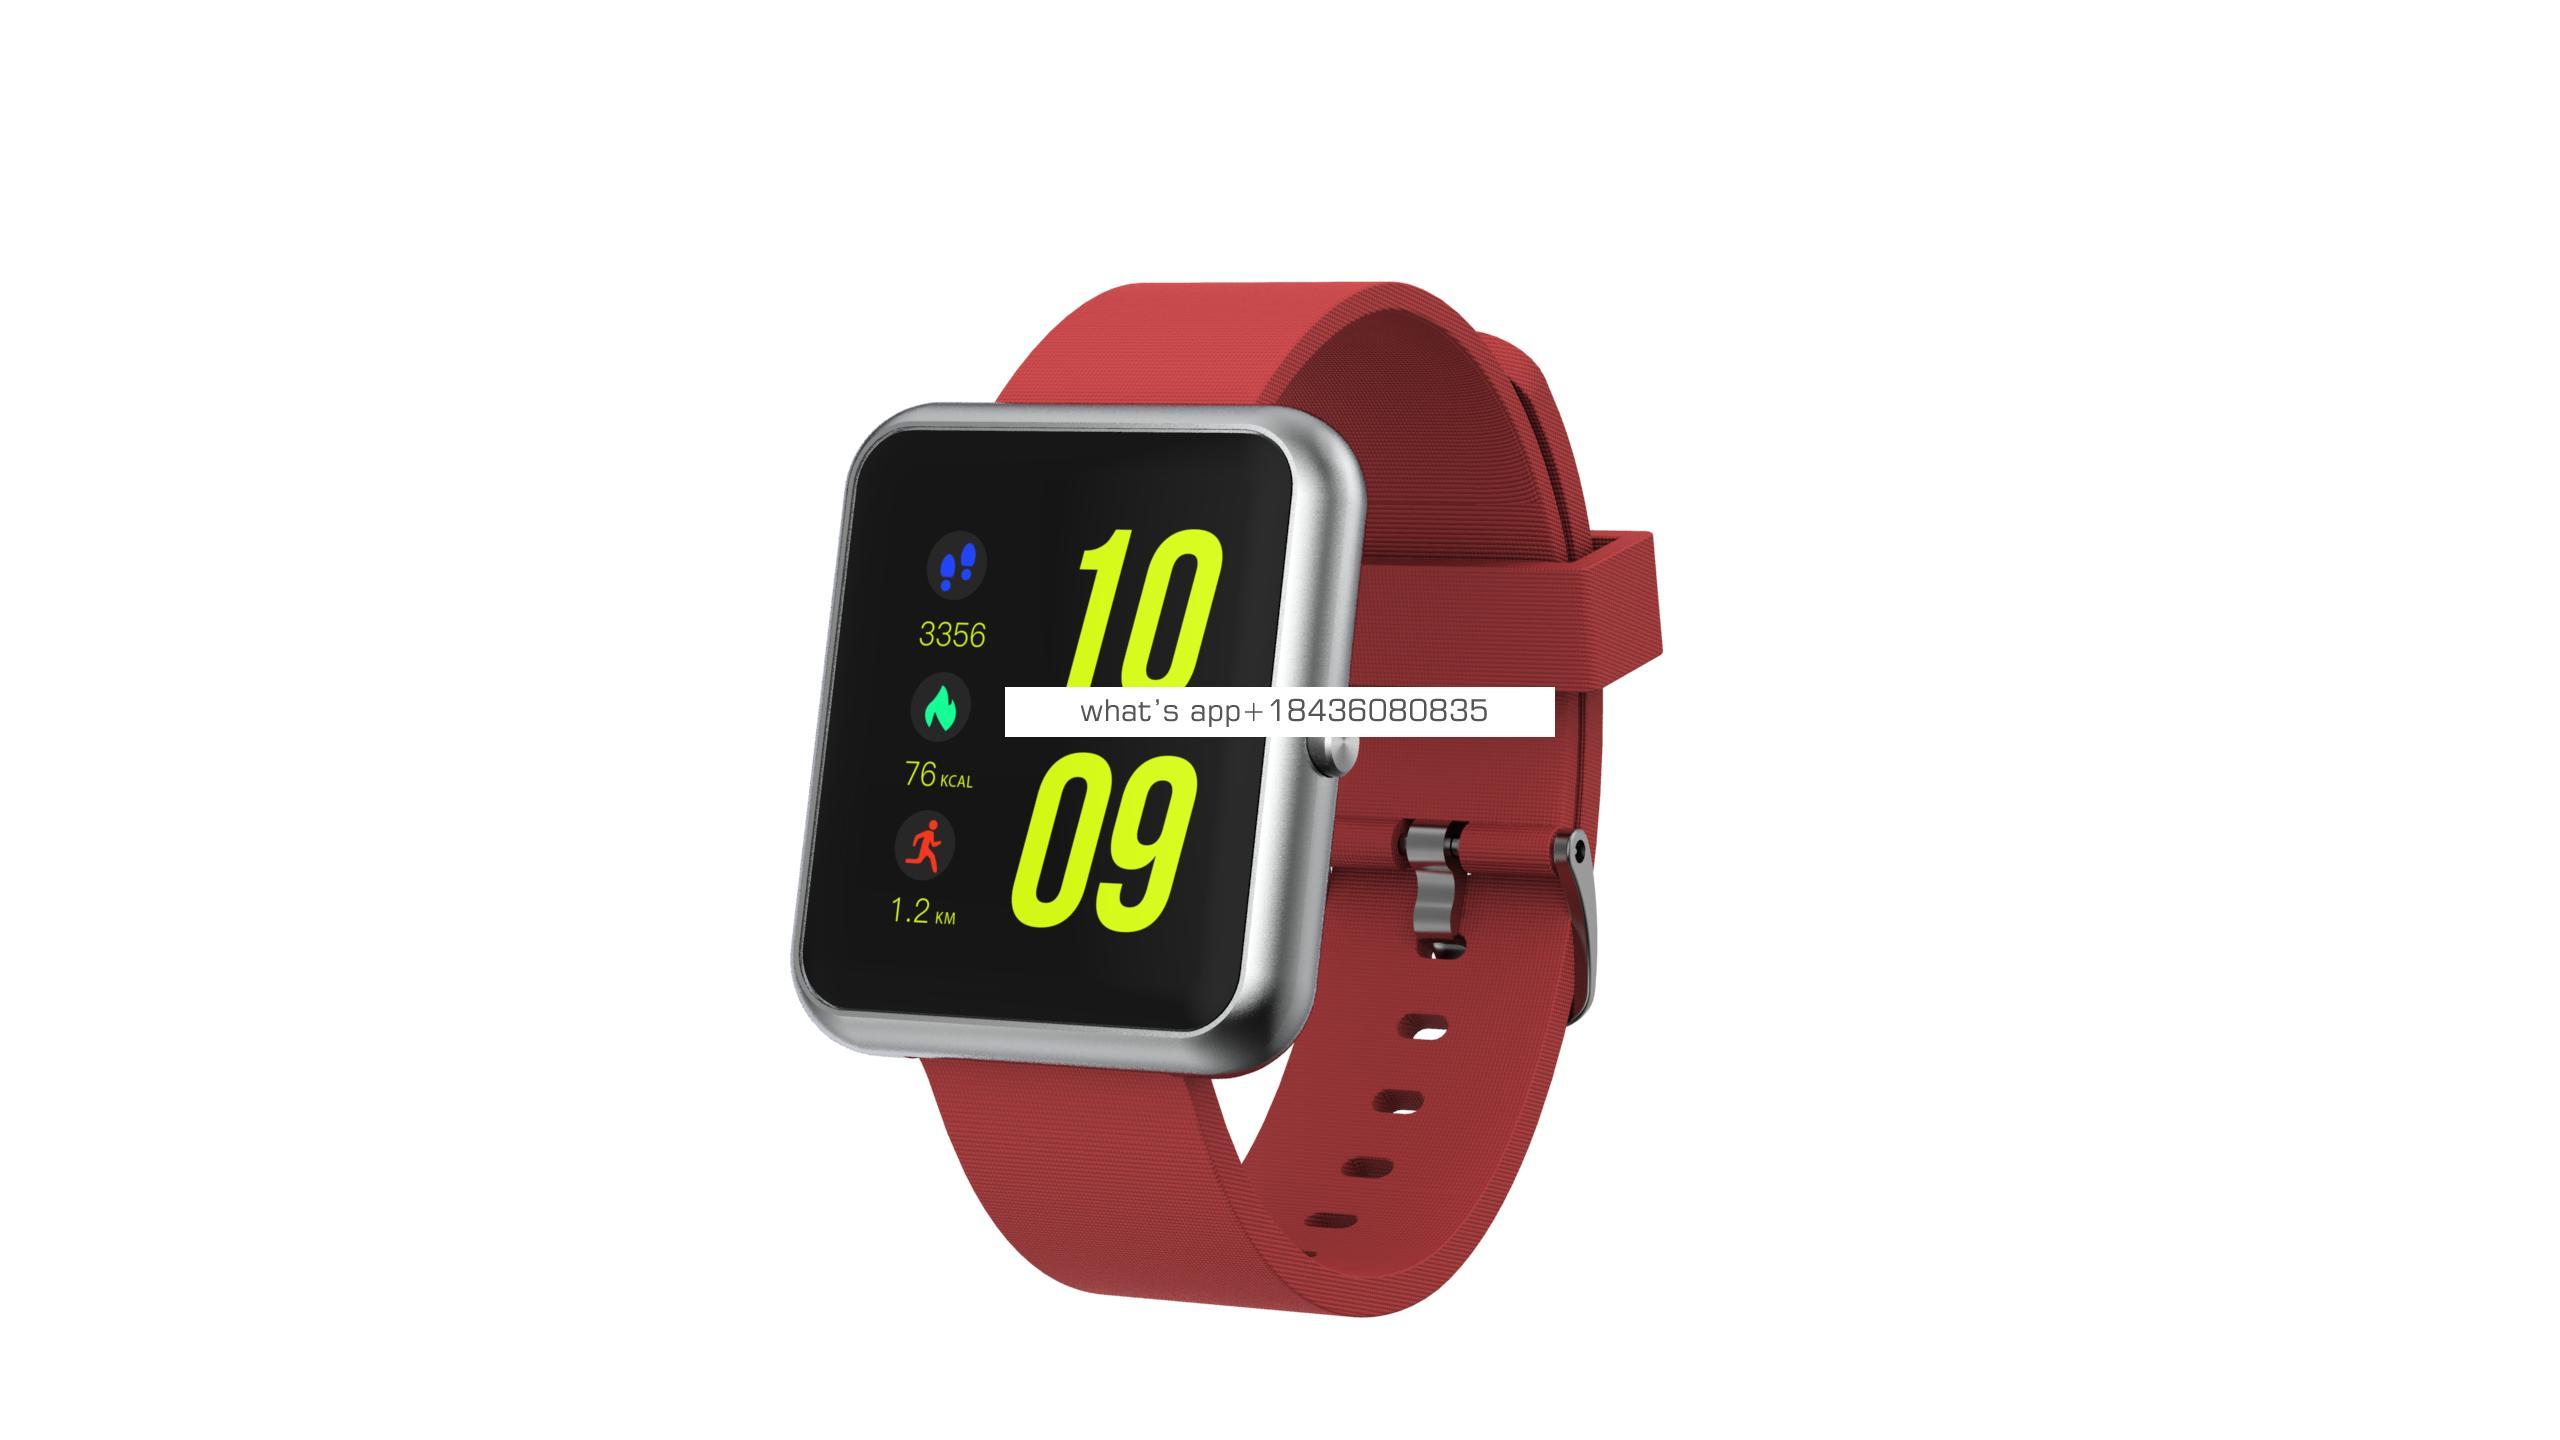 smart watch  outdoor sport wristband  waterproof 1.3 inch IPS  screen with alarm calling 2019 top sale